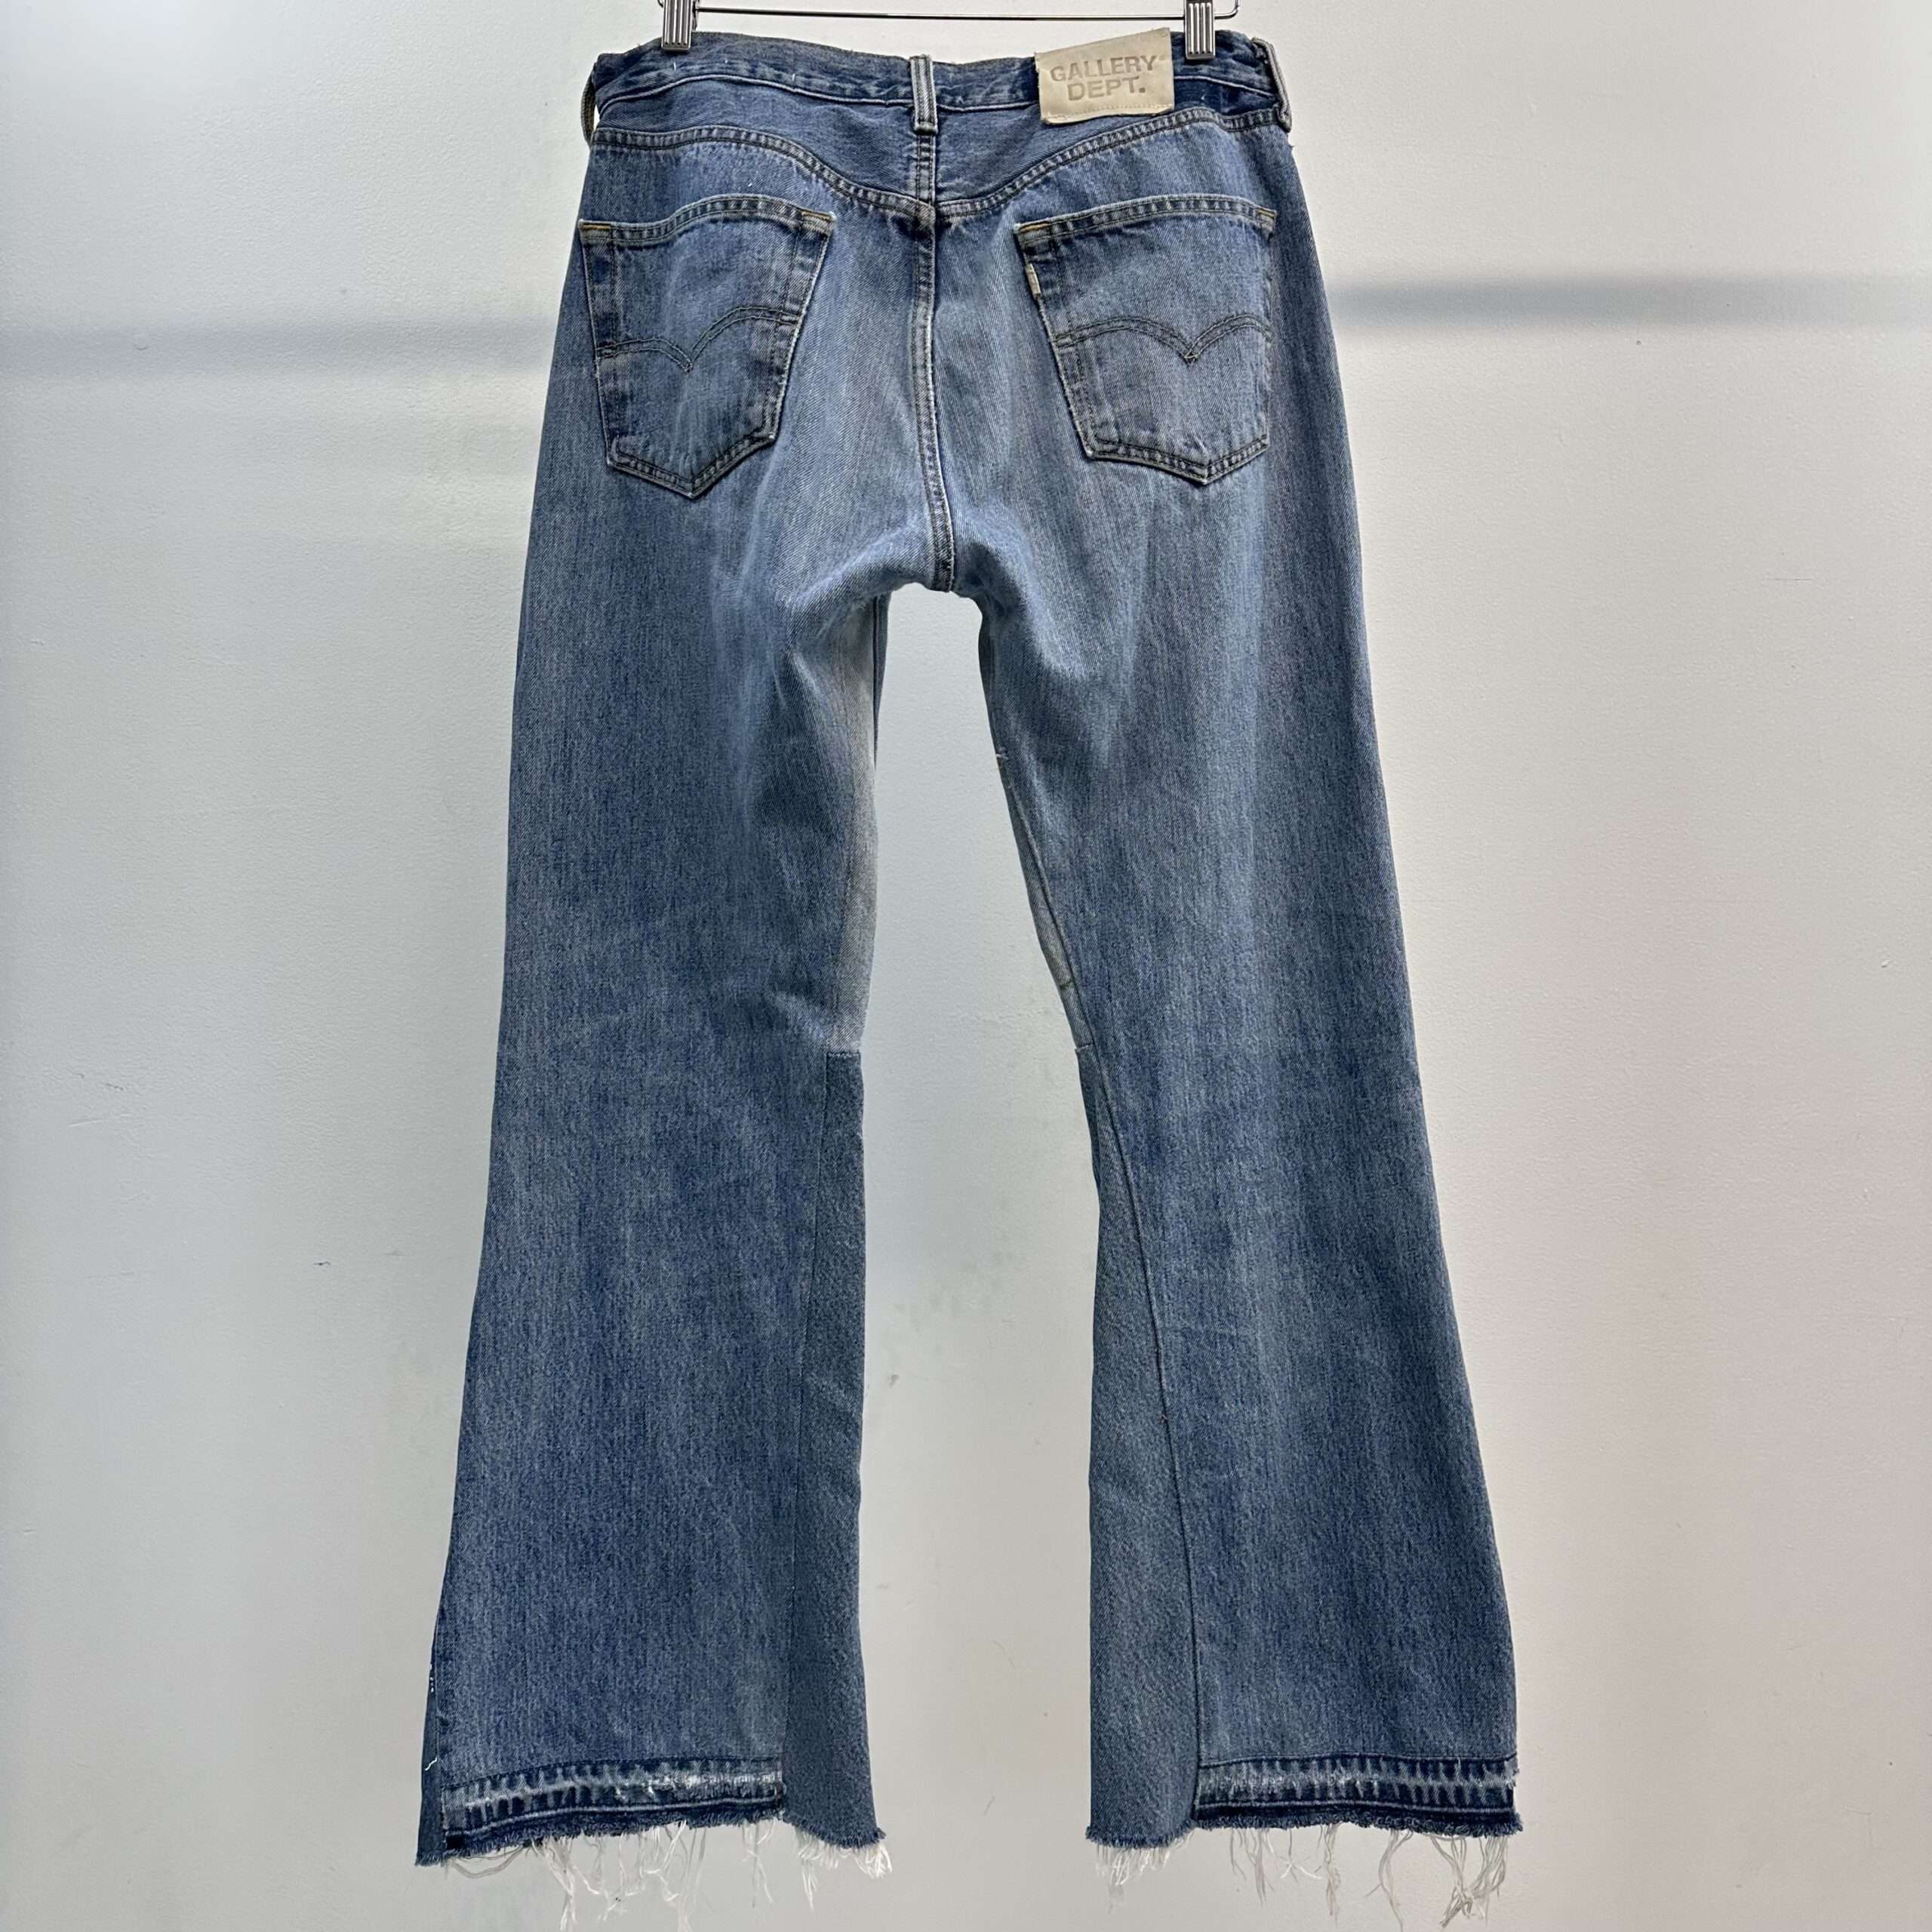 Gallery Dept. Flared Jeans - Veblen